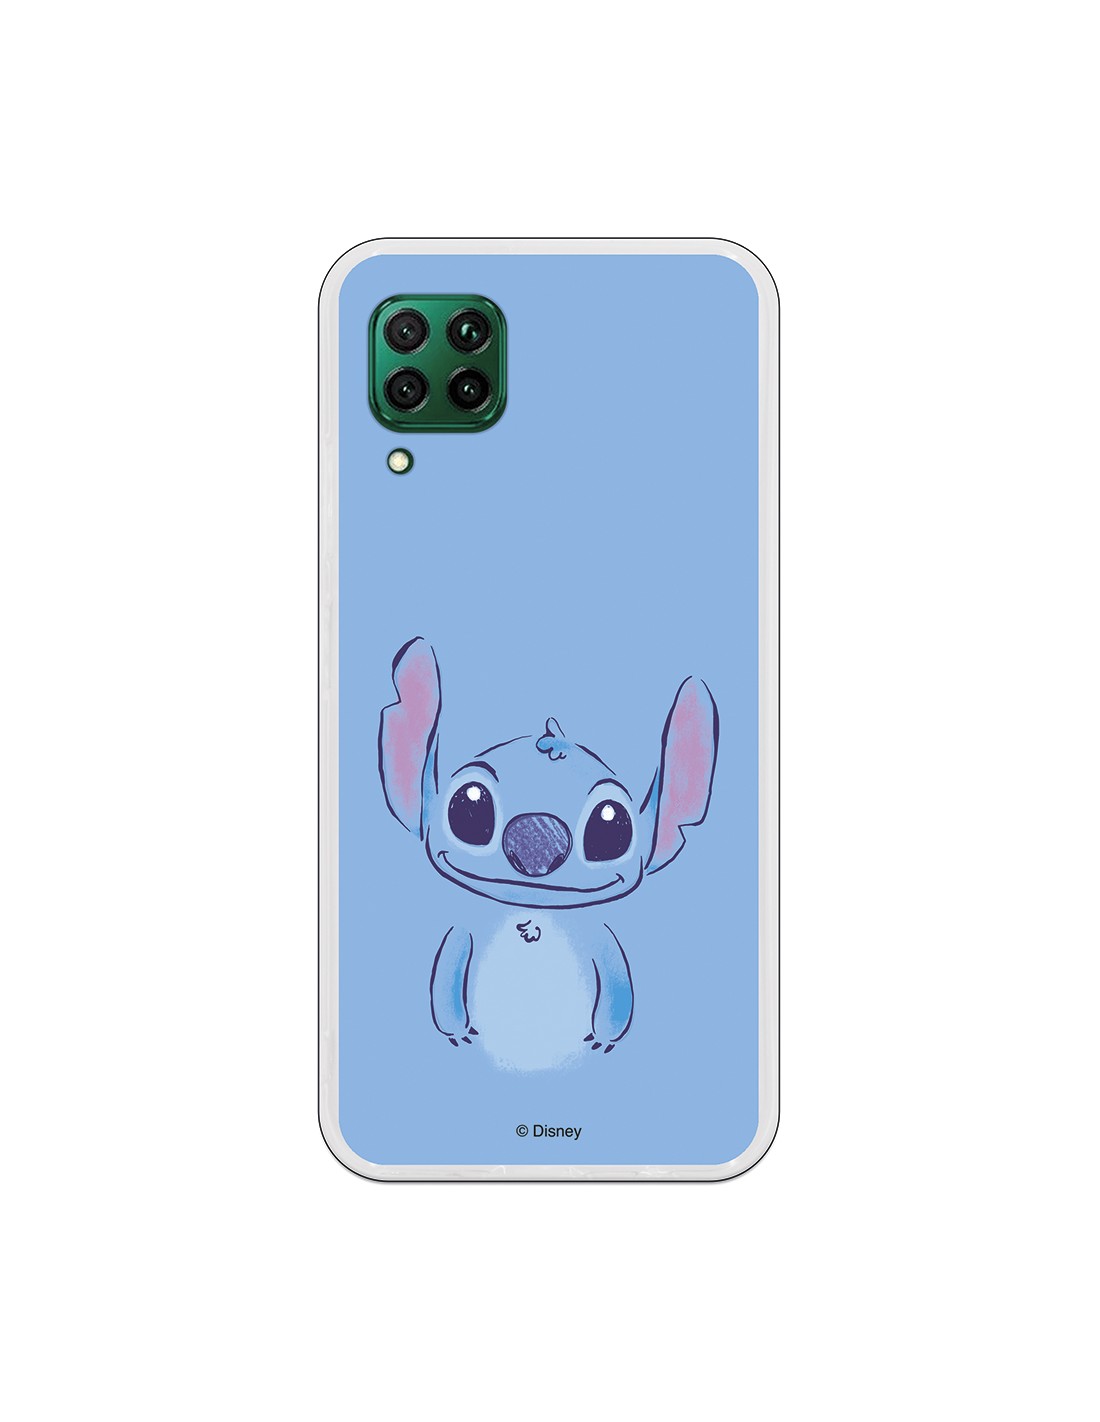 Funda para Huawei P40 Lite Oficial de Disney Stitch Azul - Lilo & Stitch